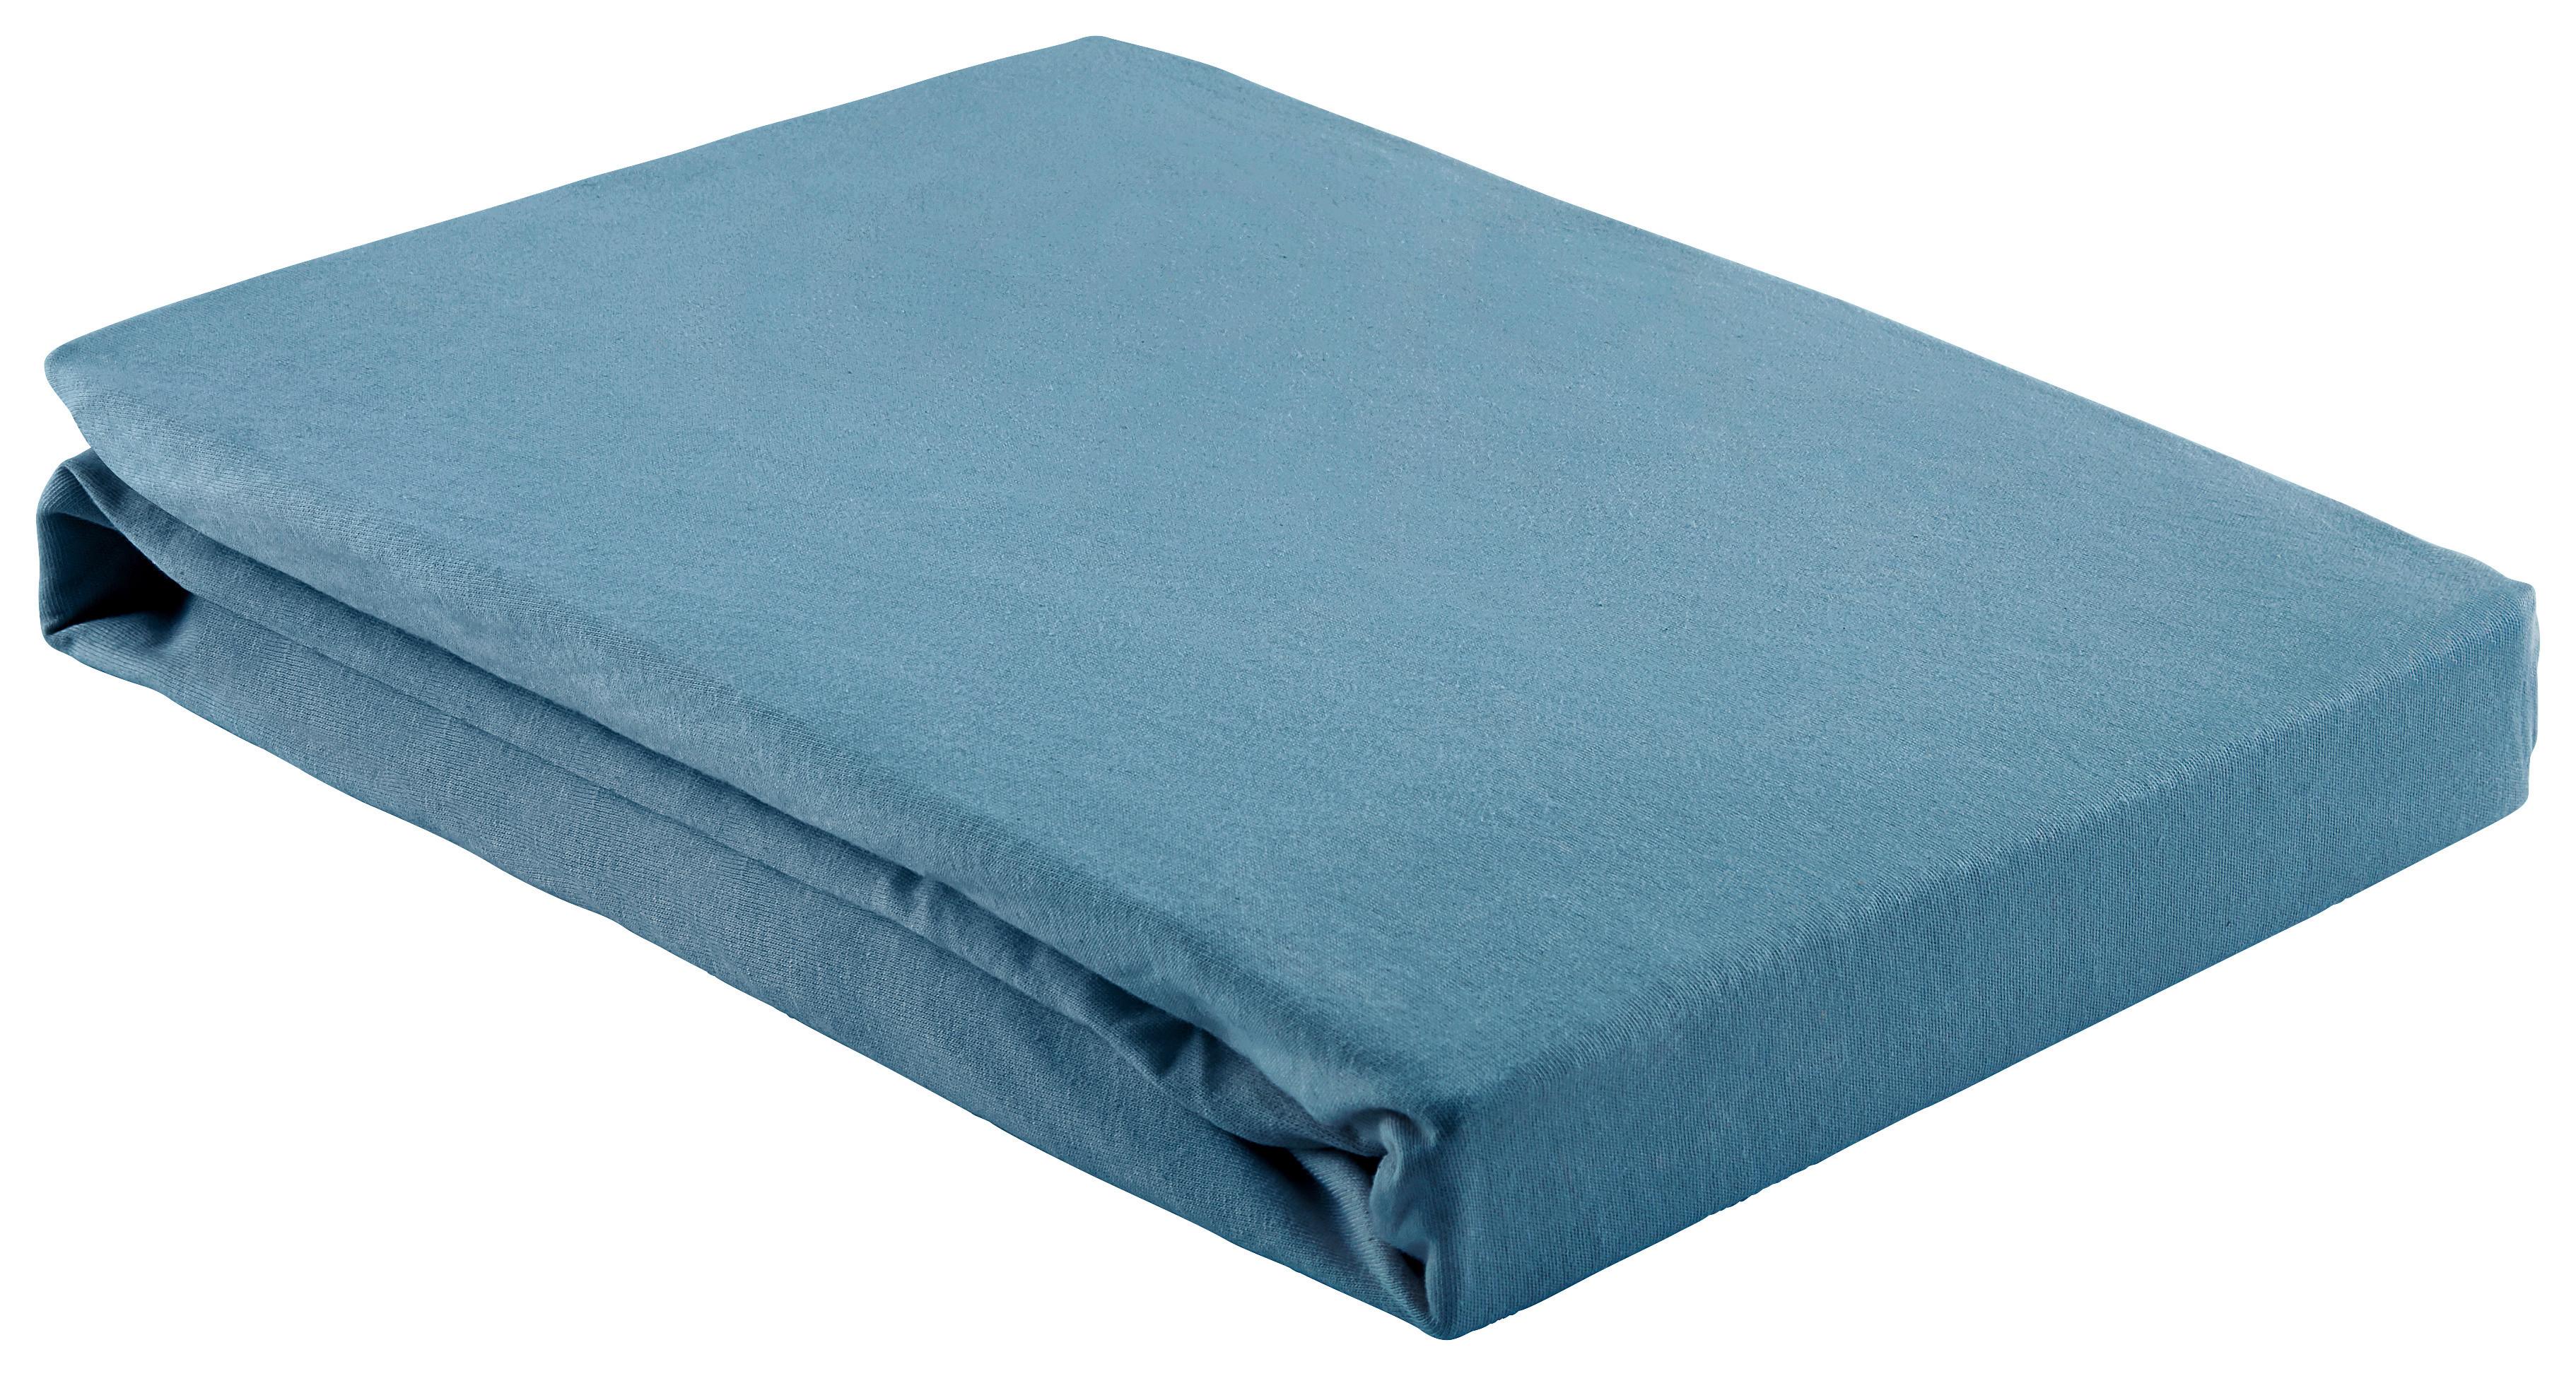 Elastické Prostěradlo Basic, 150/200 Cm - tmavě modrá, textil (150/200cm) - Modern Living